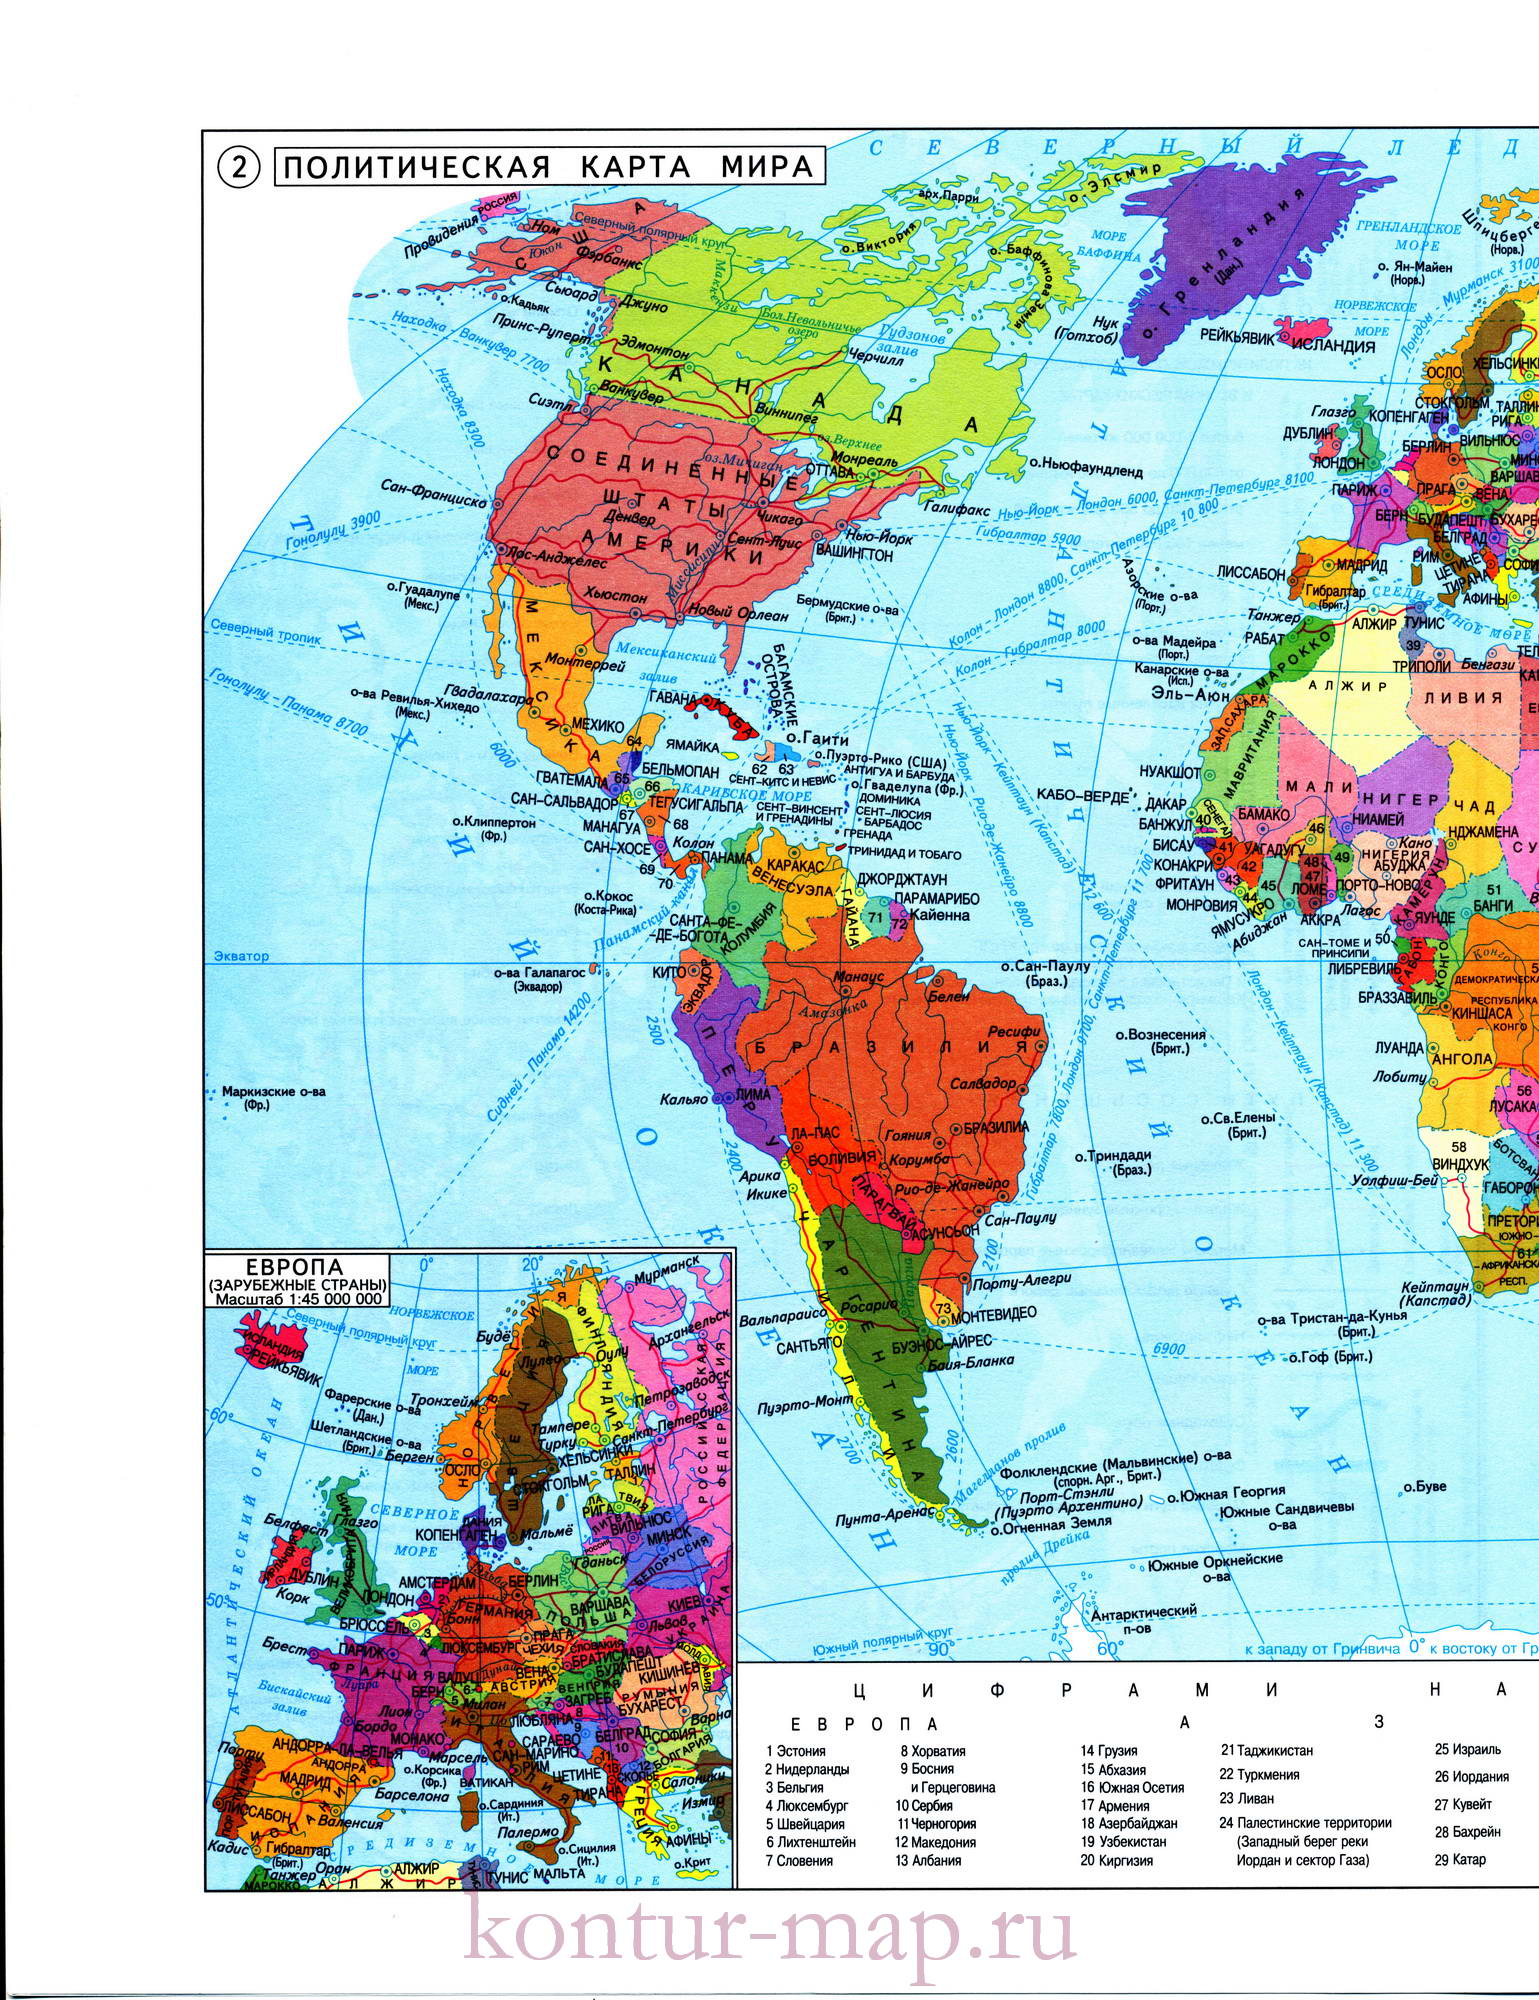 Политическая карта мира. Скачать бесплатно карту мира политическую для 10класса. Большая карта мира для 10